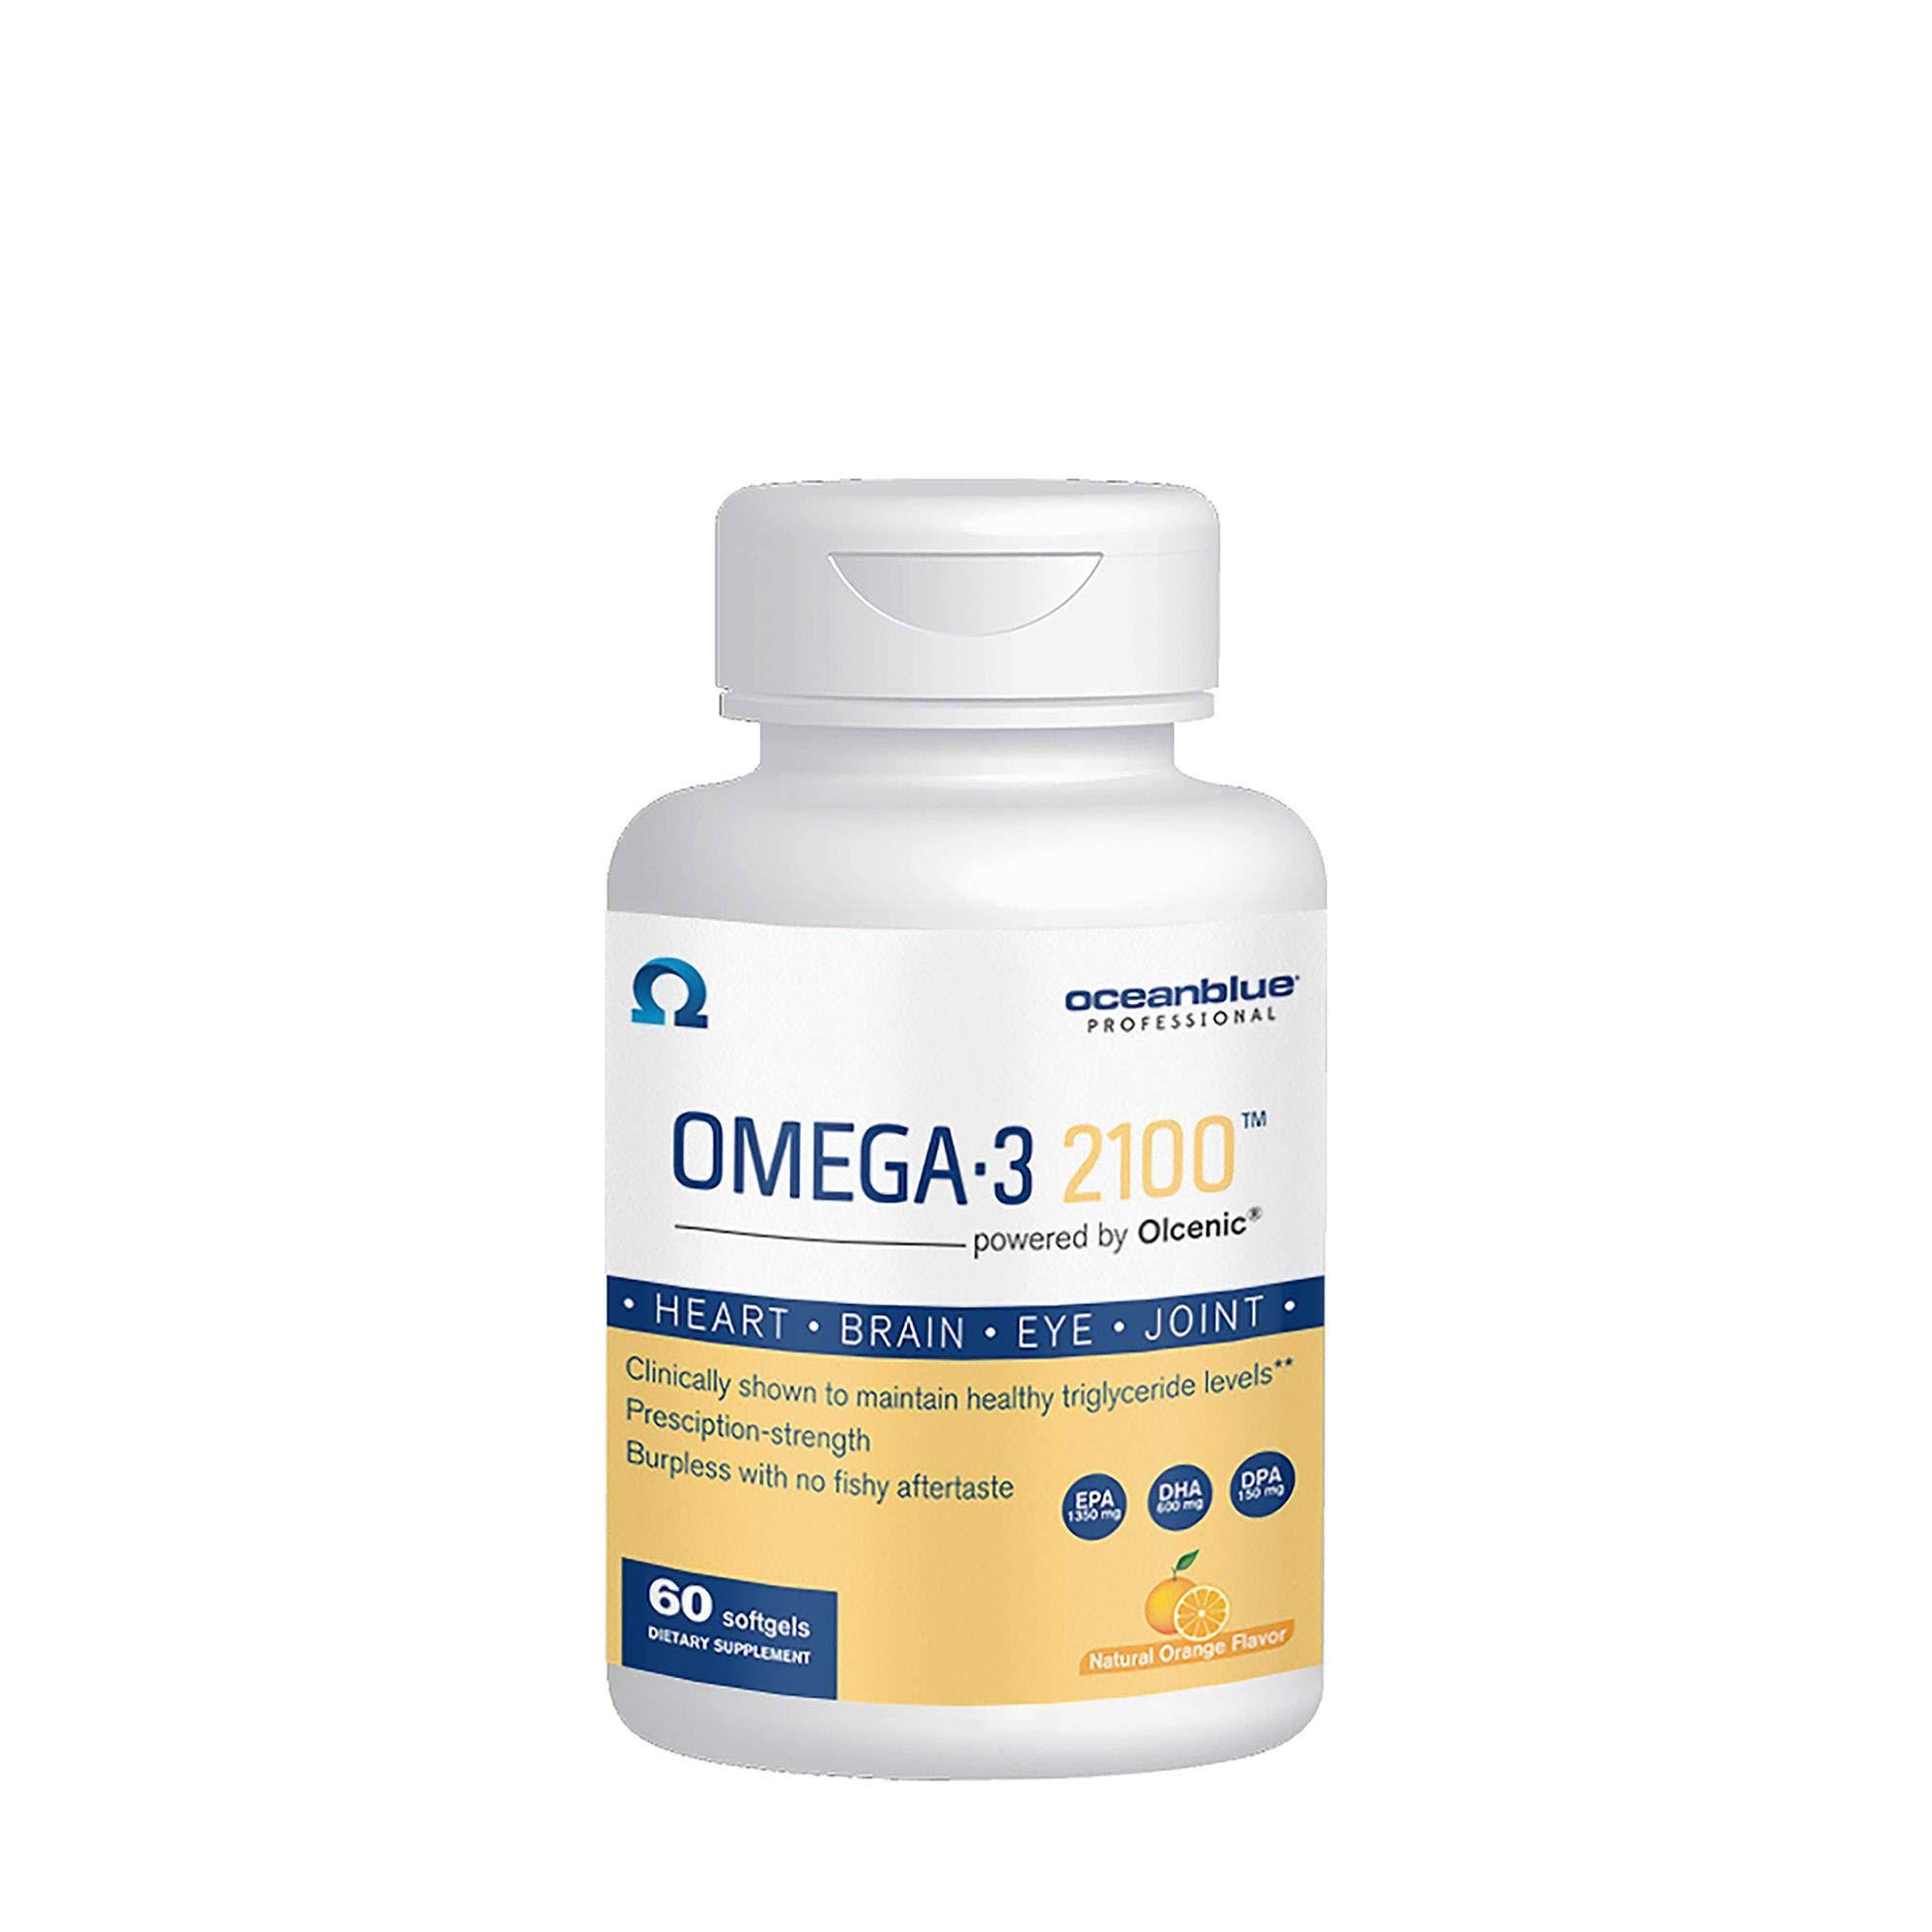 Oceanblue Omega-3 2100, Softgels, Natural Orange - 60 softgels